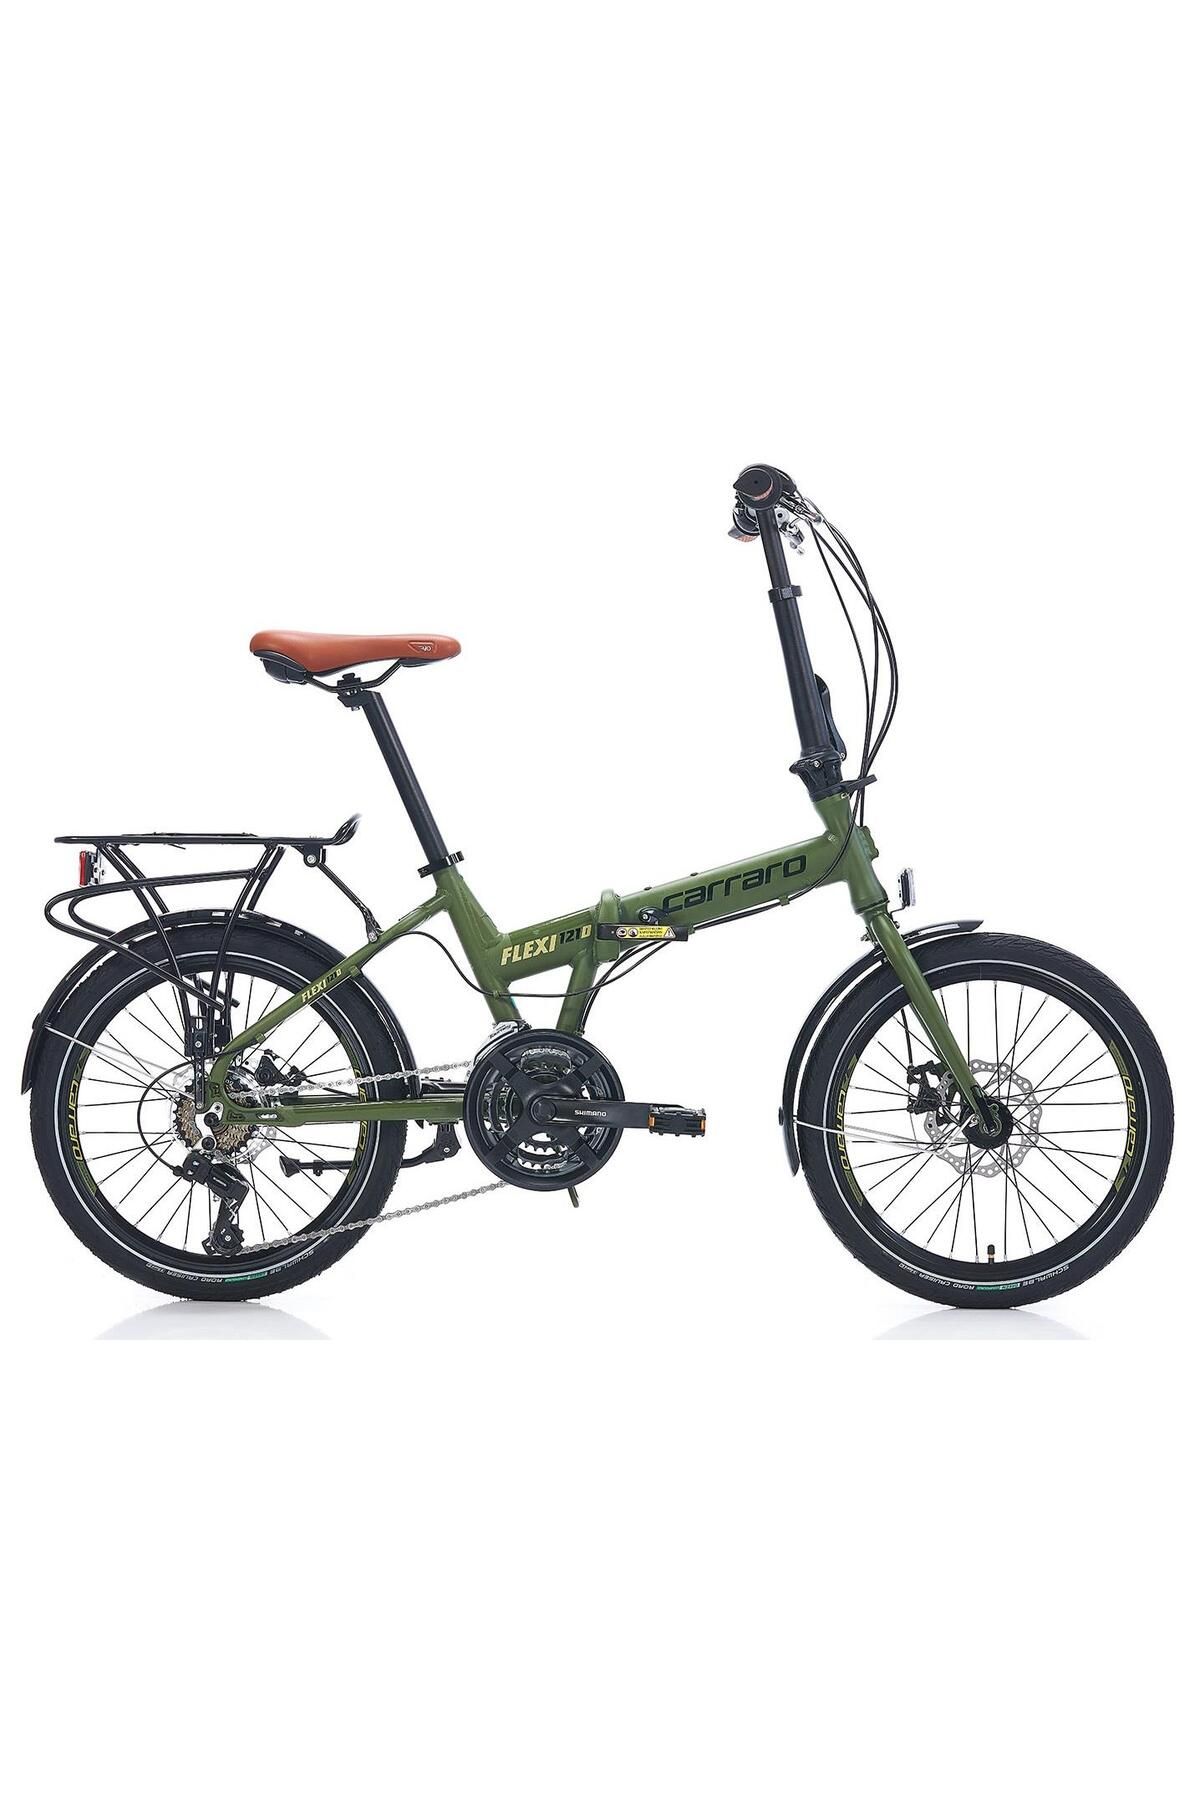 Carraro Flexi 121d Disk Katlanır Bisiklet 21 Vites Mat Haki Yeşil